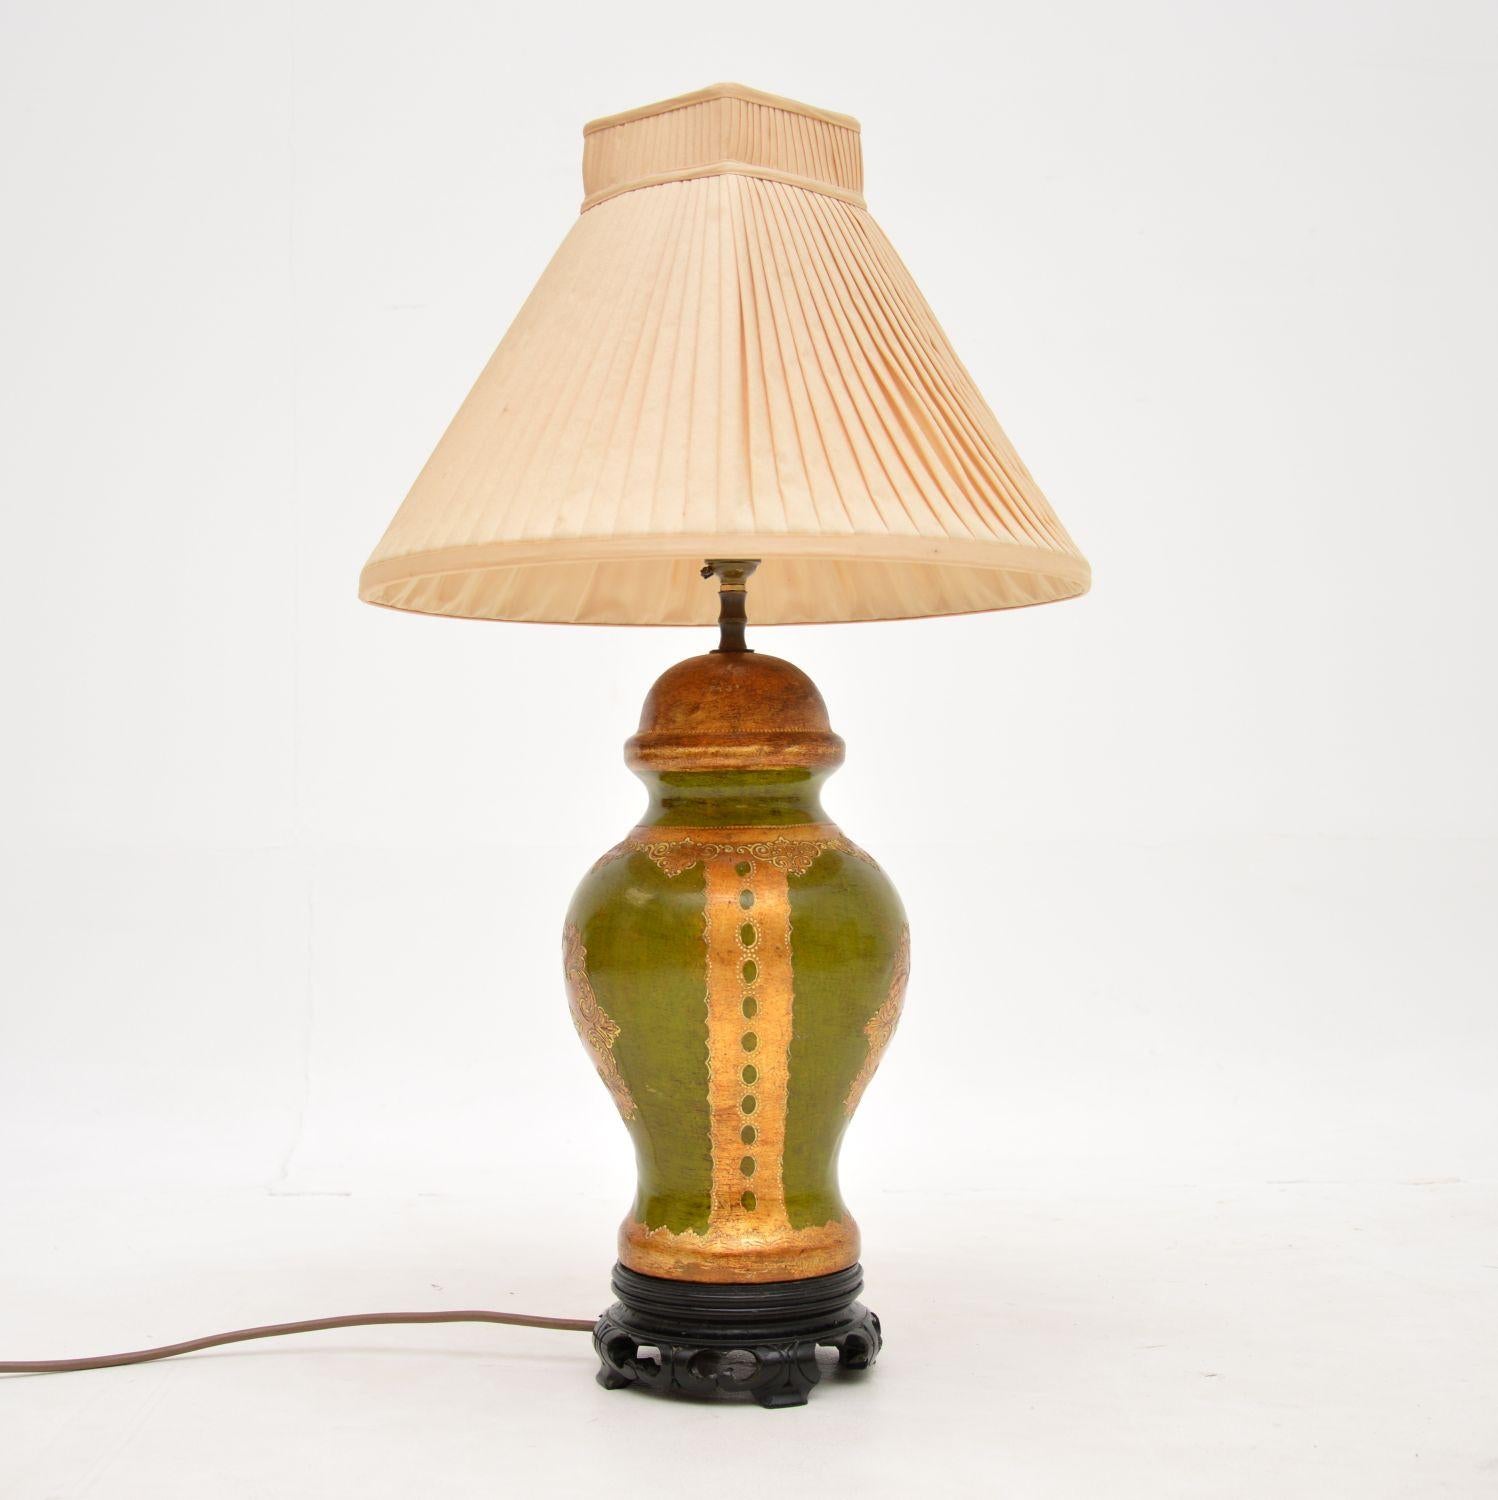 Une belle lampe de table italienne vintage en céramique, très typique du style vénitien. Fabriqué en Italie, il date des années 1960.

Il est d'une qualité exceptionnelle et est magnifiquement peint à la main dans des tons dorés et